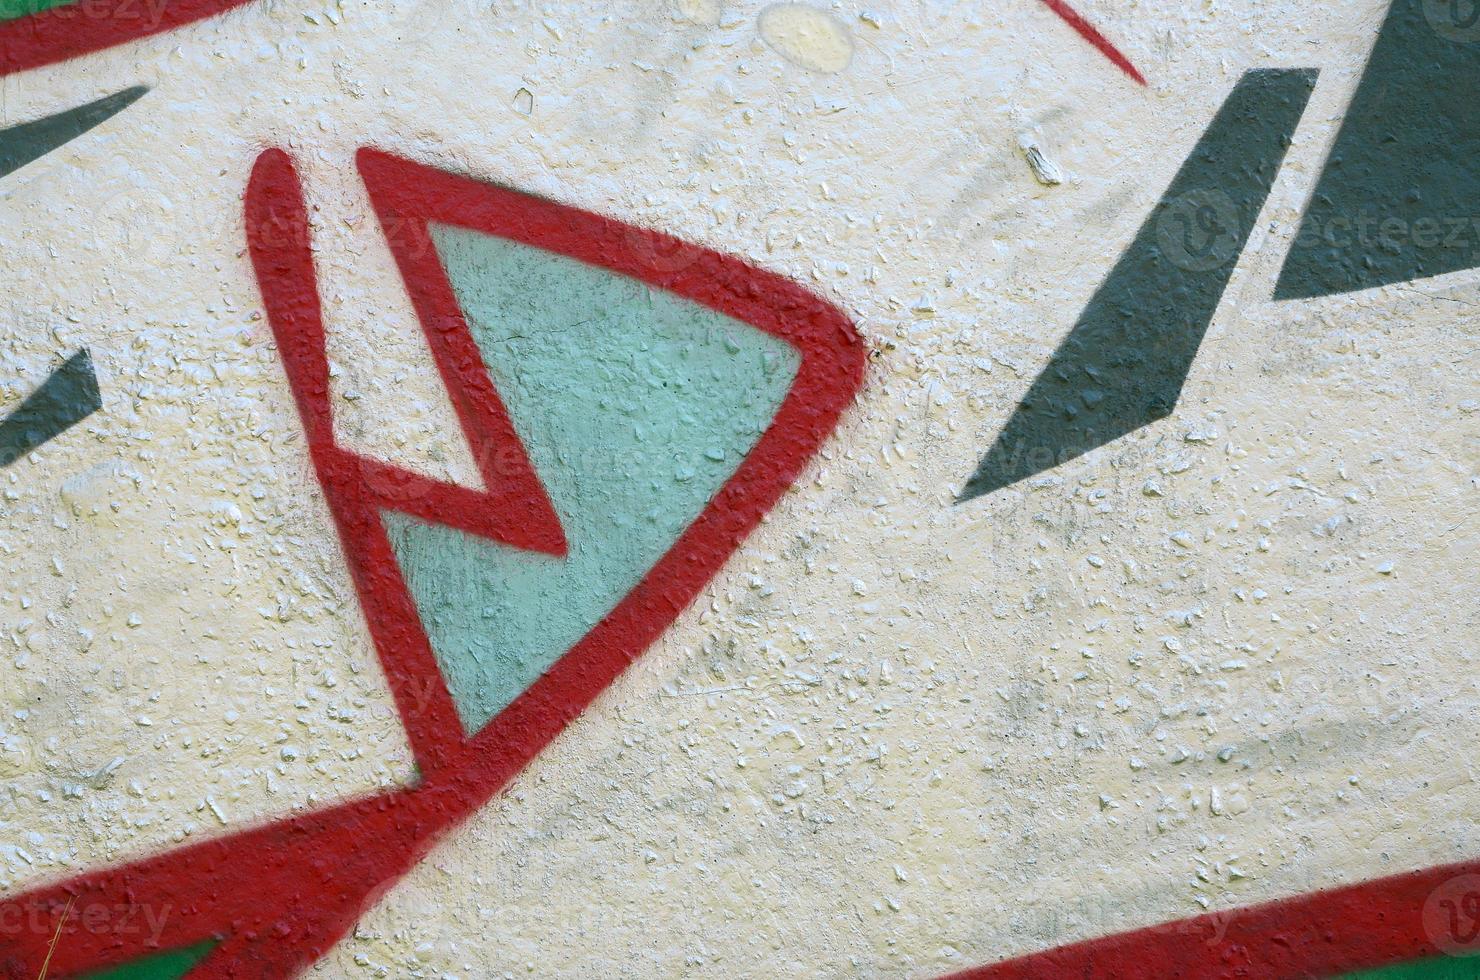 arte de rua. imagem de fundo abstrata de um fragmento de uma pintura de graffiti colorida em cromo e tons de vermelho foto